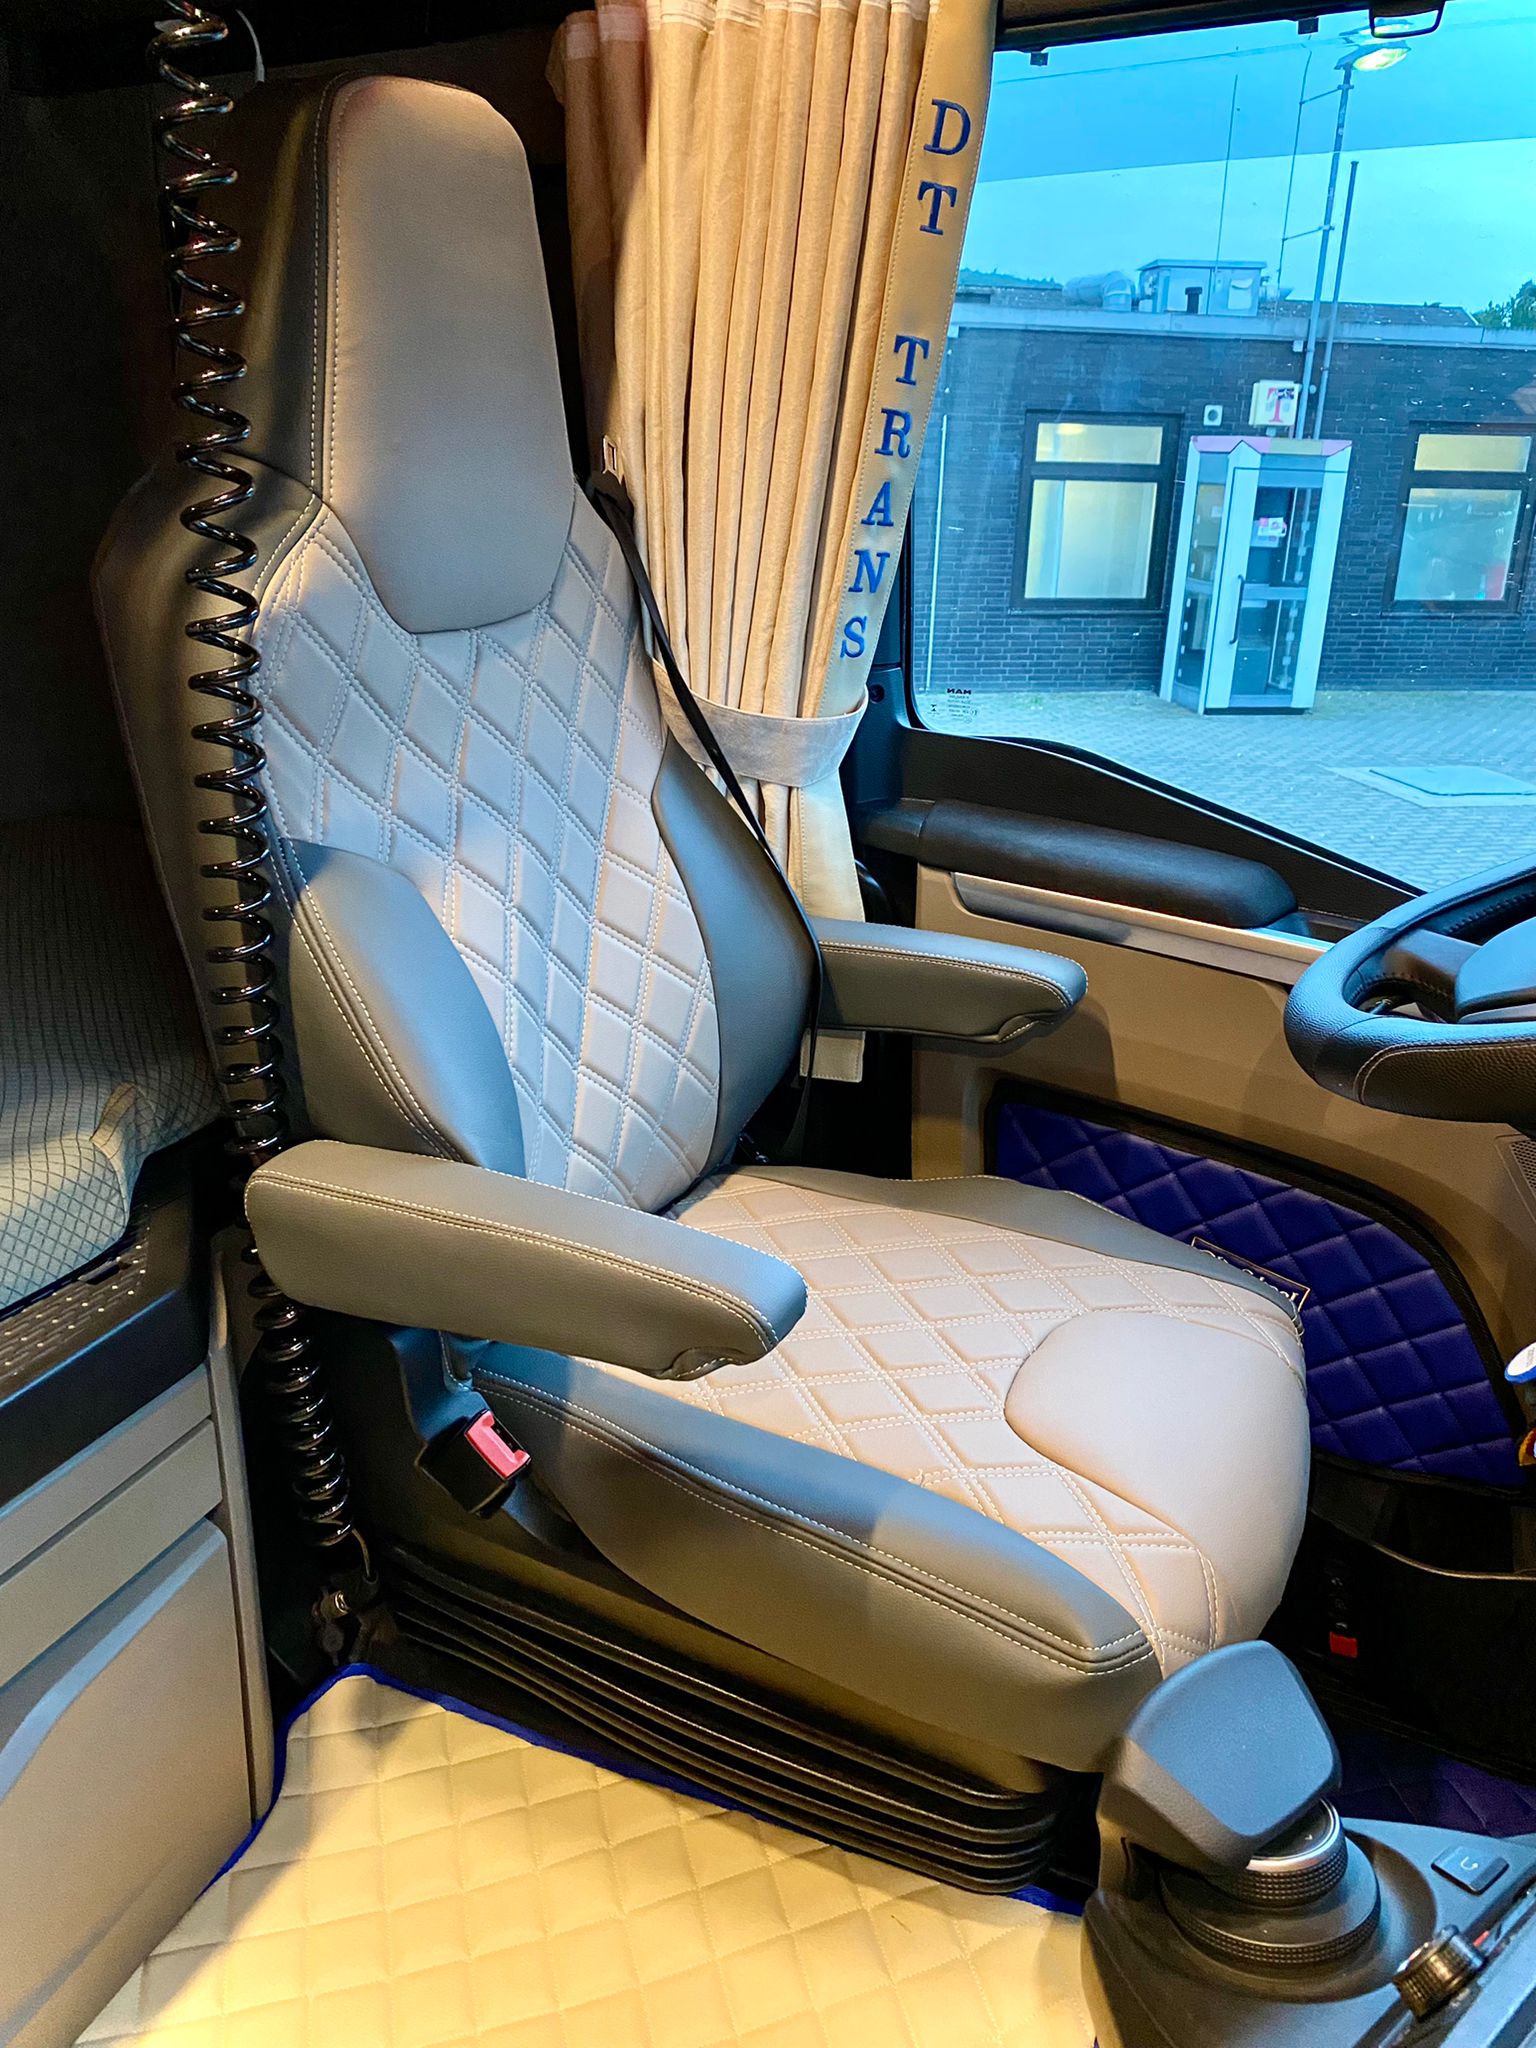 Einbau Sitzbezüge passend für MAN TGX Bj ab 2020 – LKW Innenausstattung.  Verkleidung und Einrichtung von LKW Kabinen